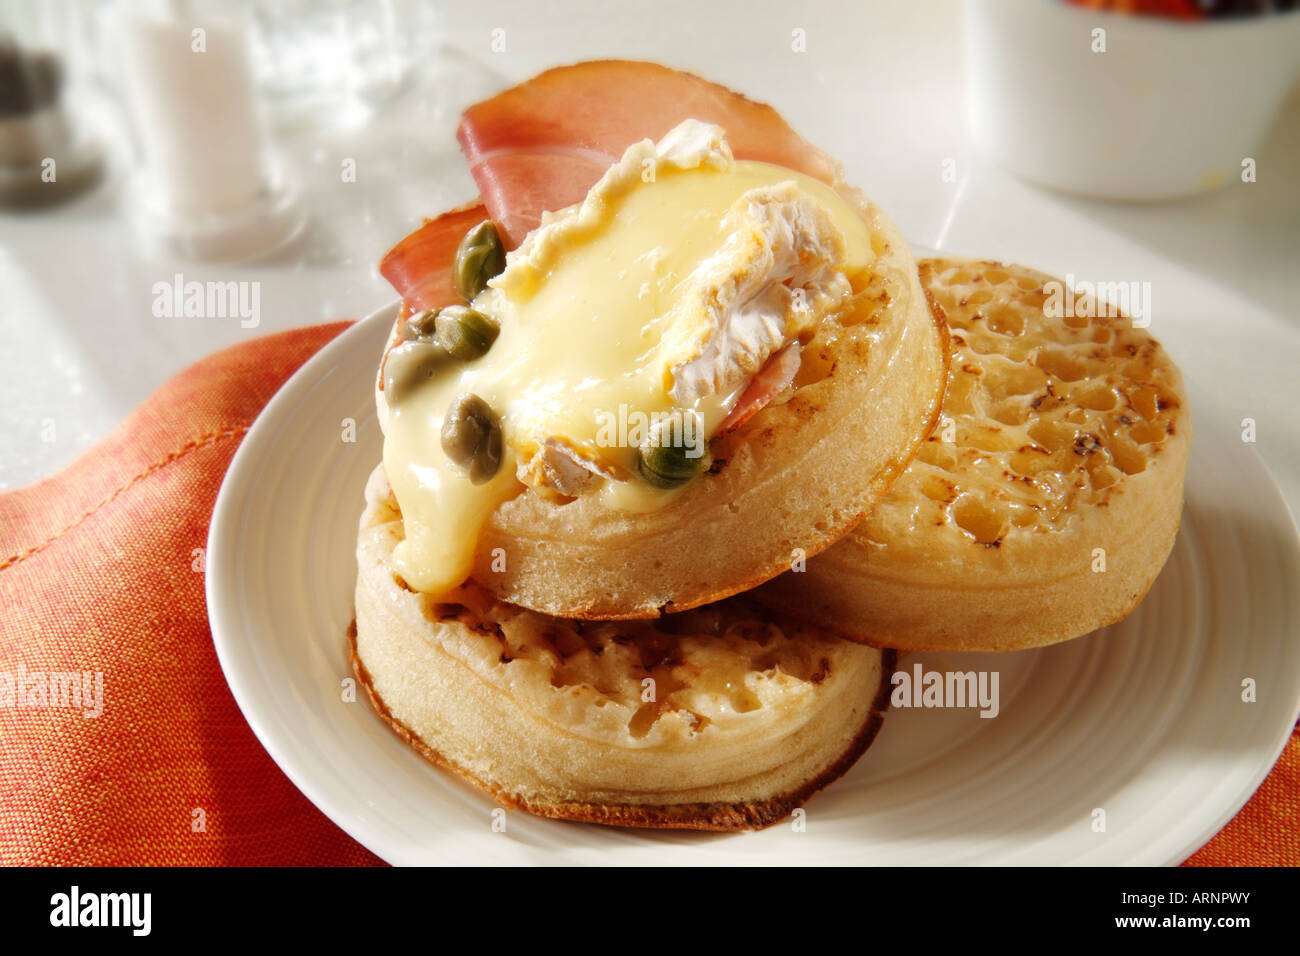 Hot ausgesprochen Crumpets mit geschmolzenem gegrillte Brie oder Camembert oder Ziegen Käse und Kapern, auf einem weißen Teller in einer Tabelle serviert. Stockfoto